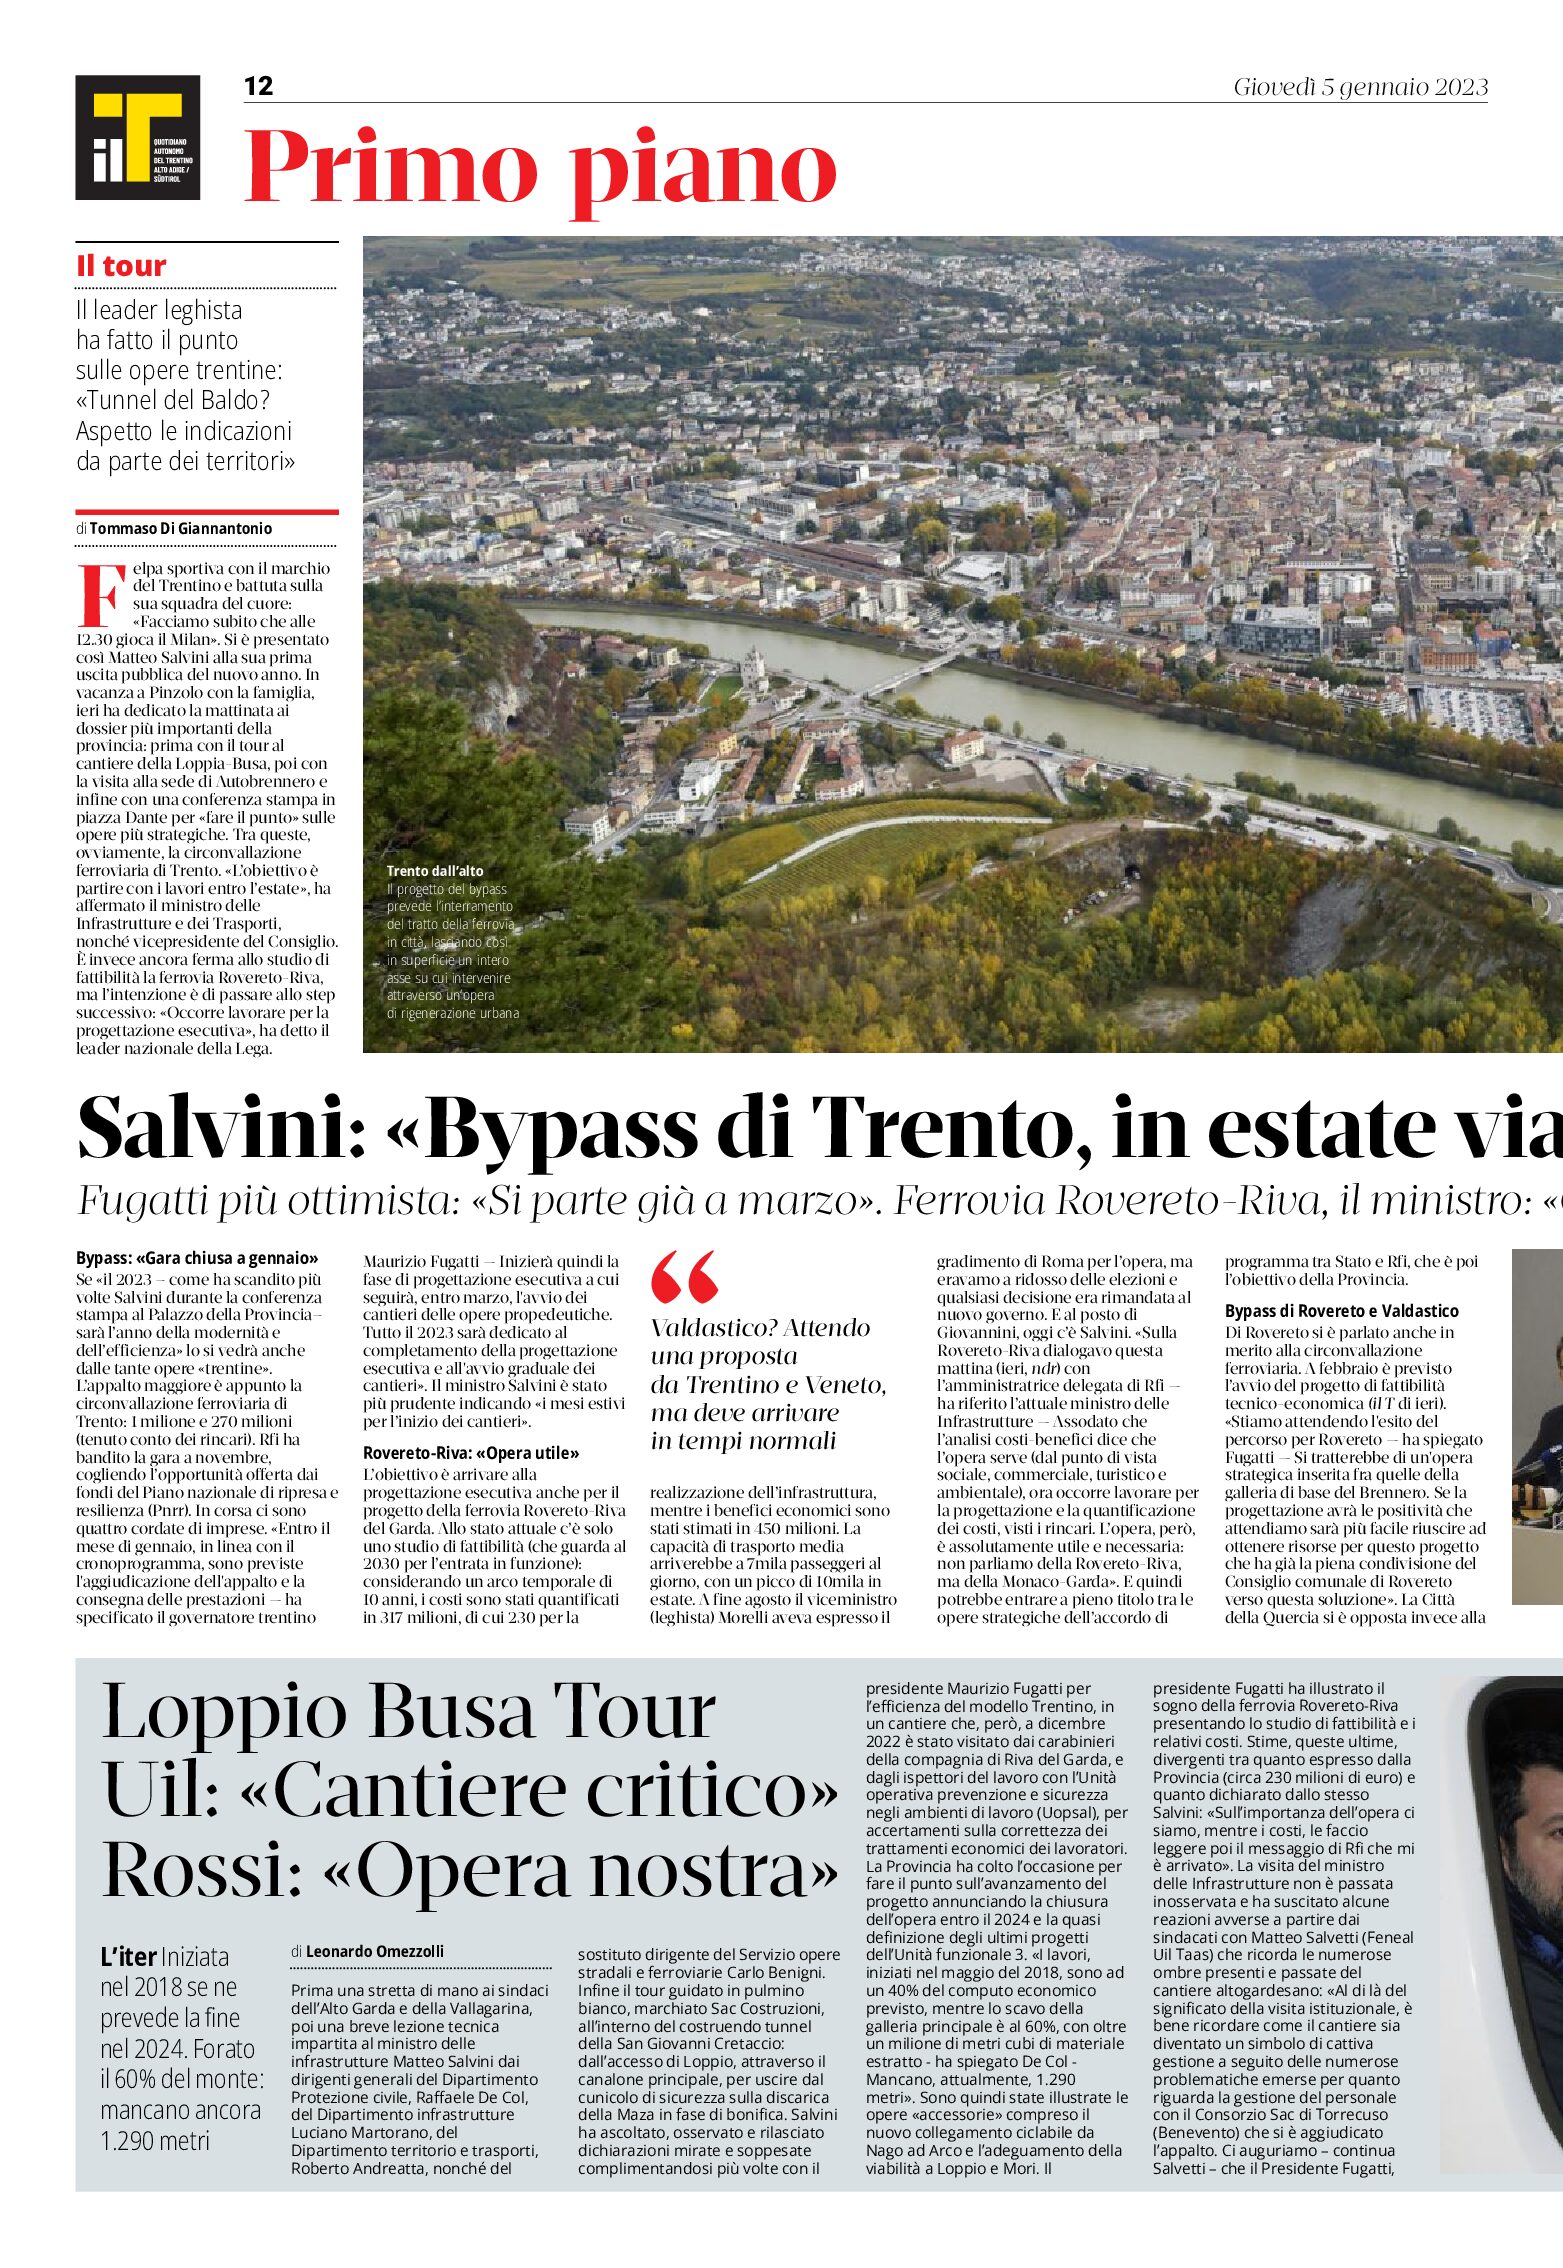 Trentino: Salvini “bypass di Trento, in estate via ai cantieri”